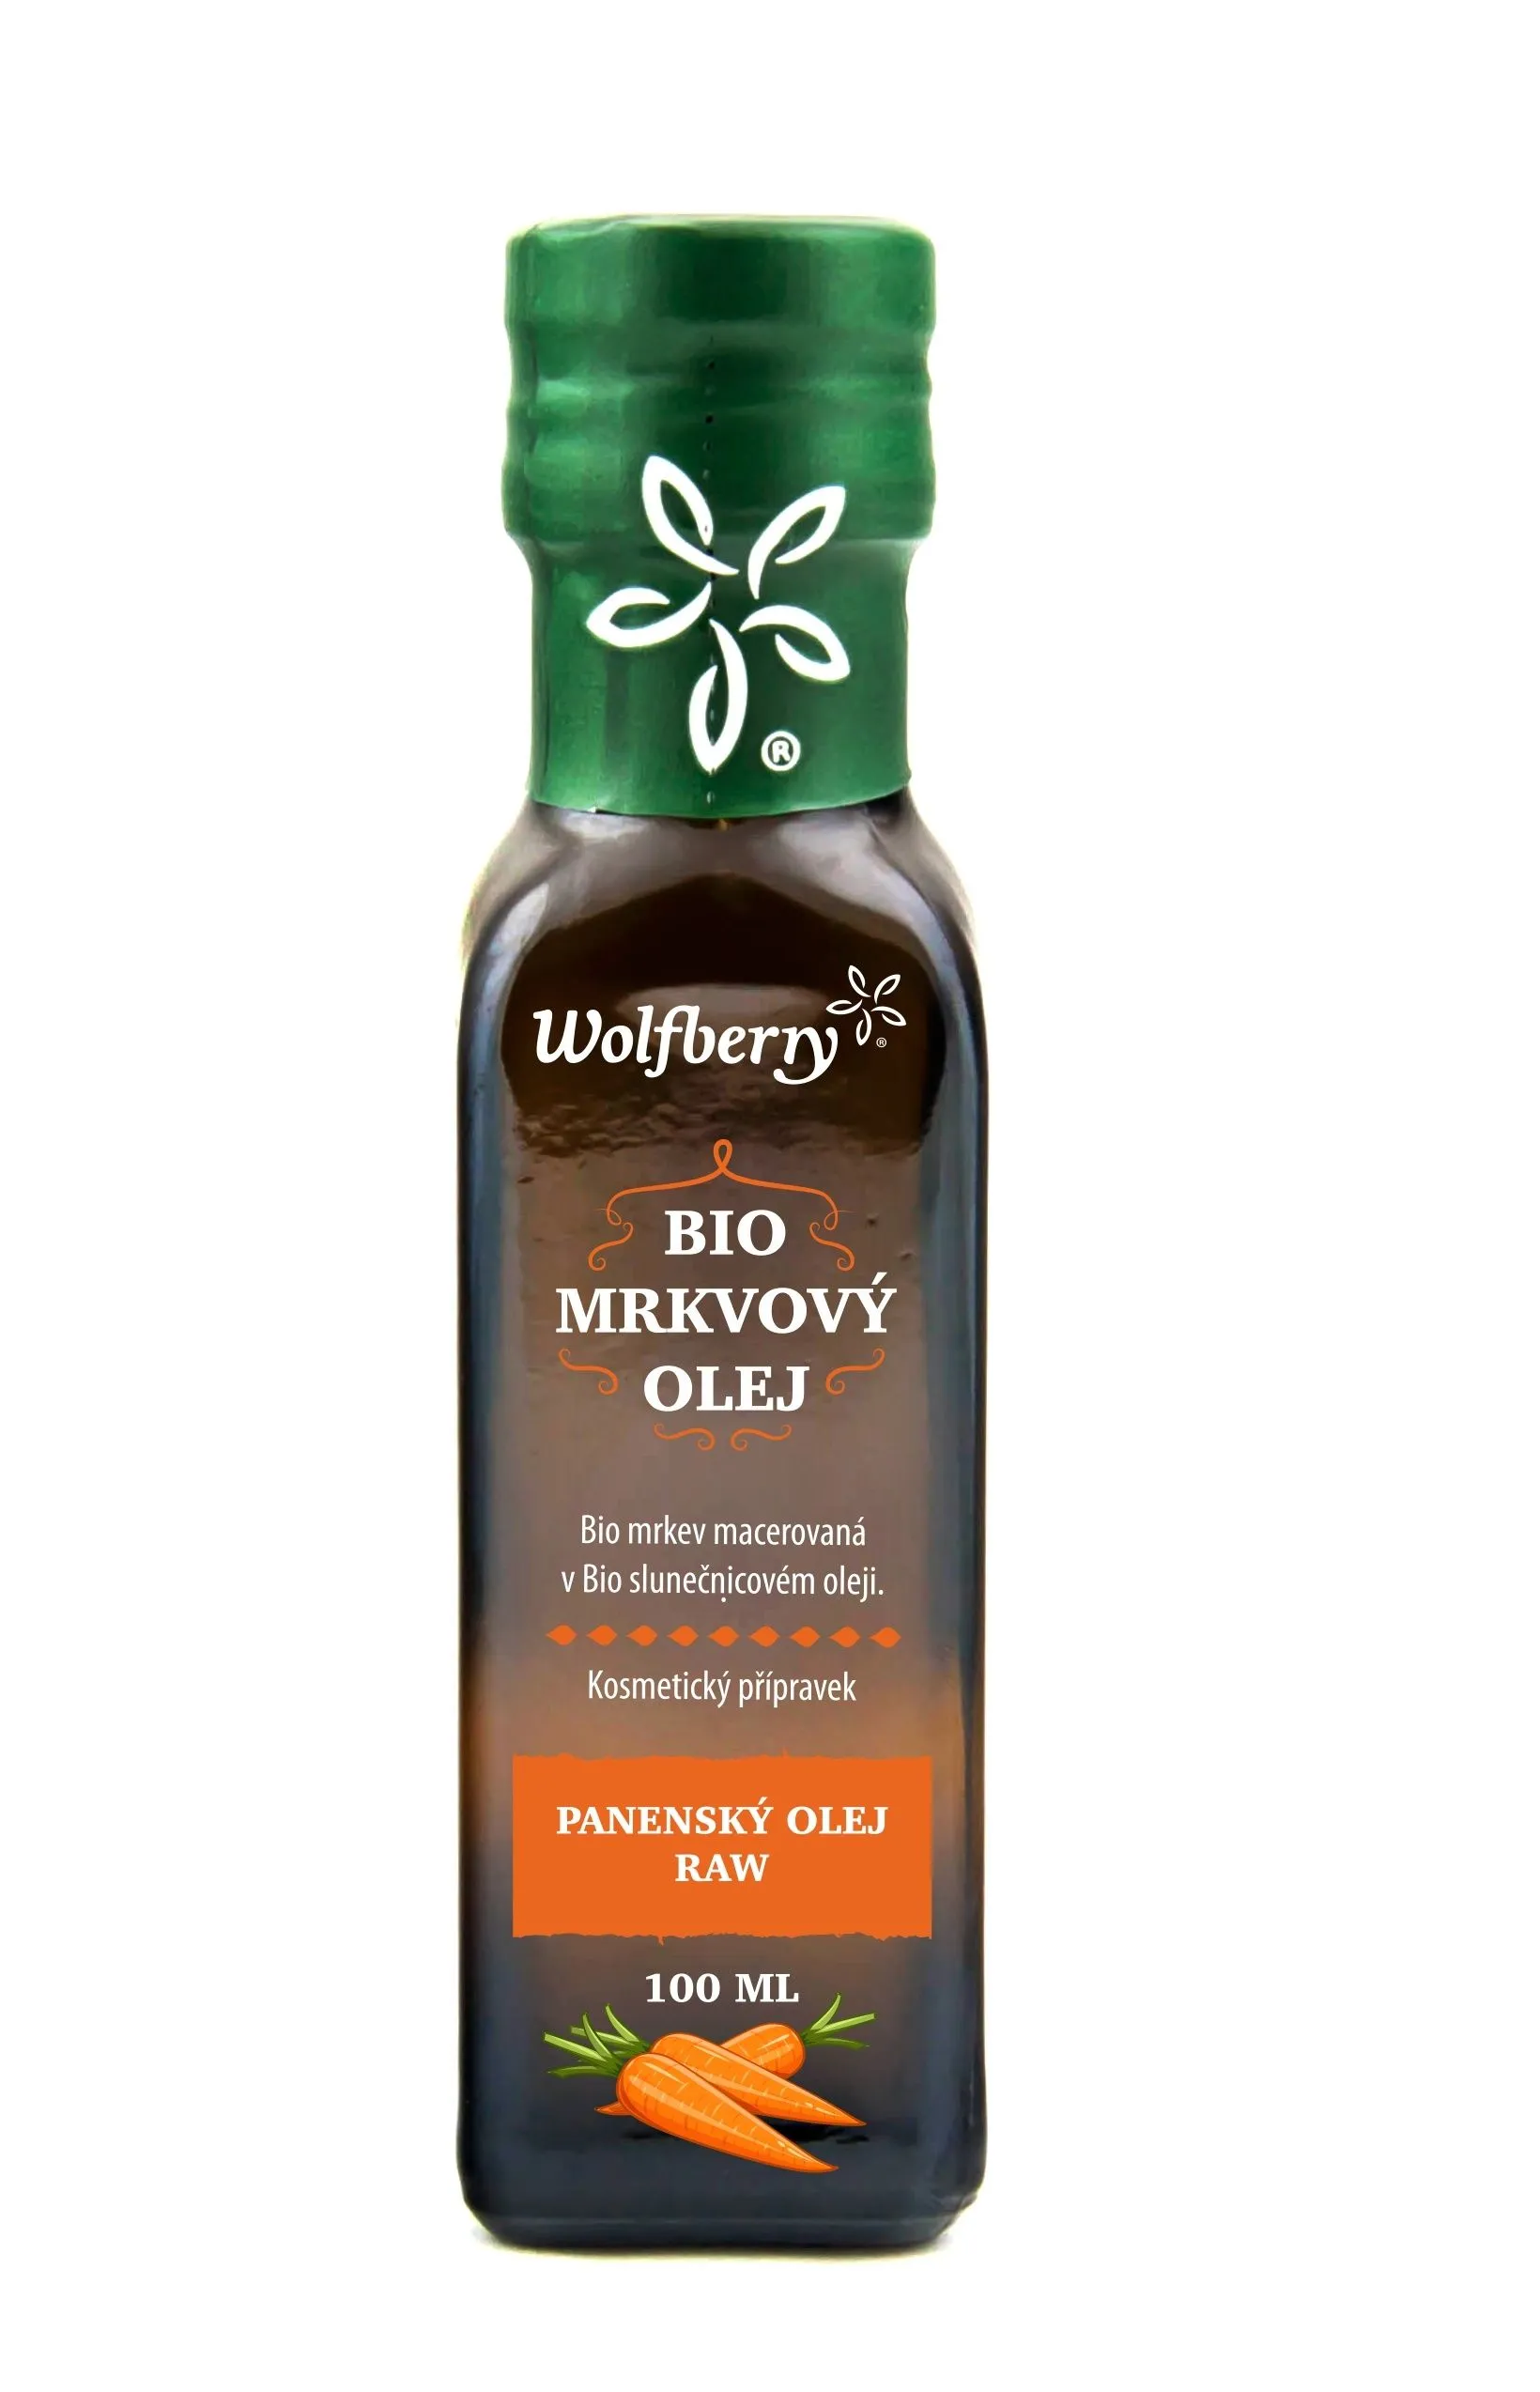 Wolfberry Mrkvový olej BIO 100 ml